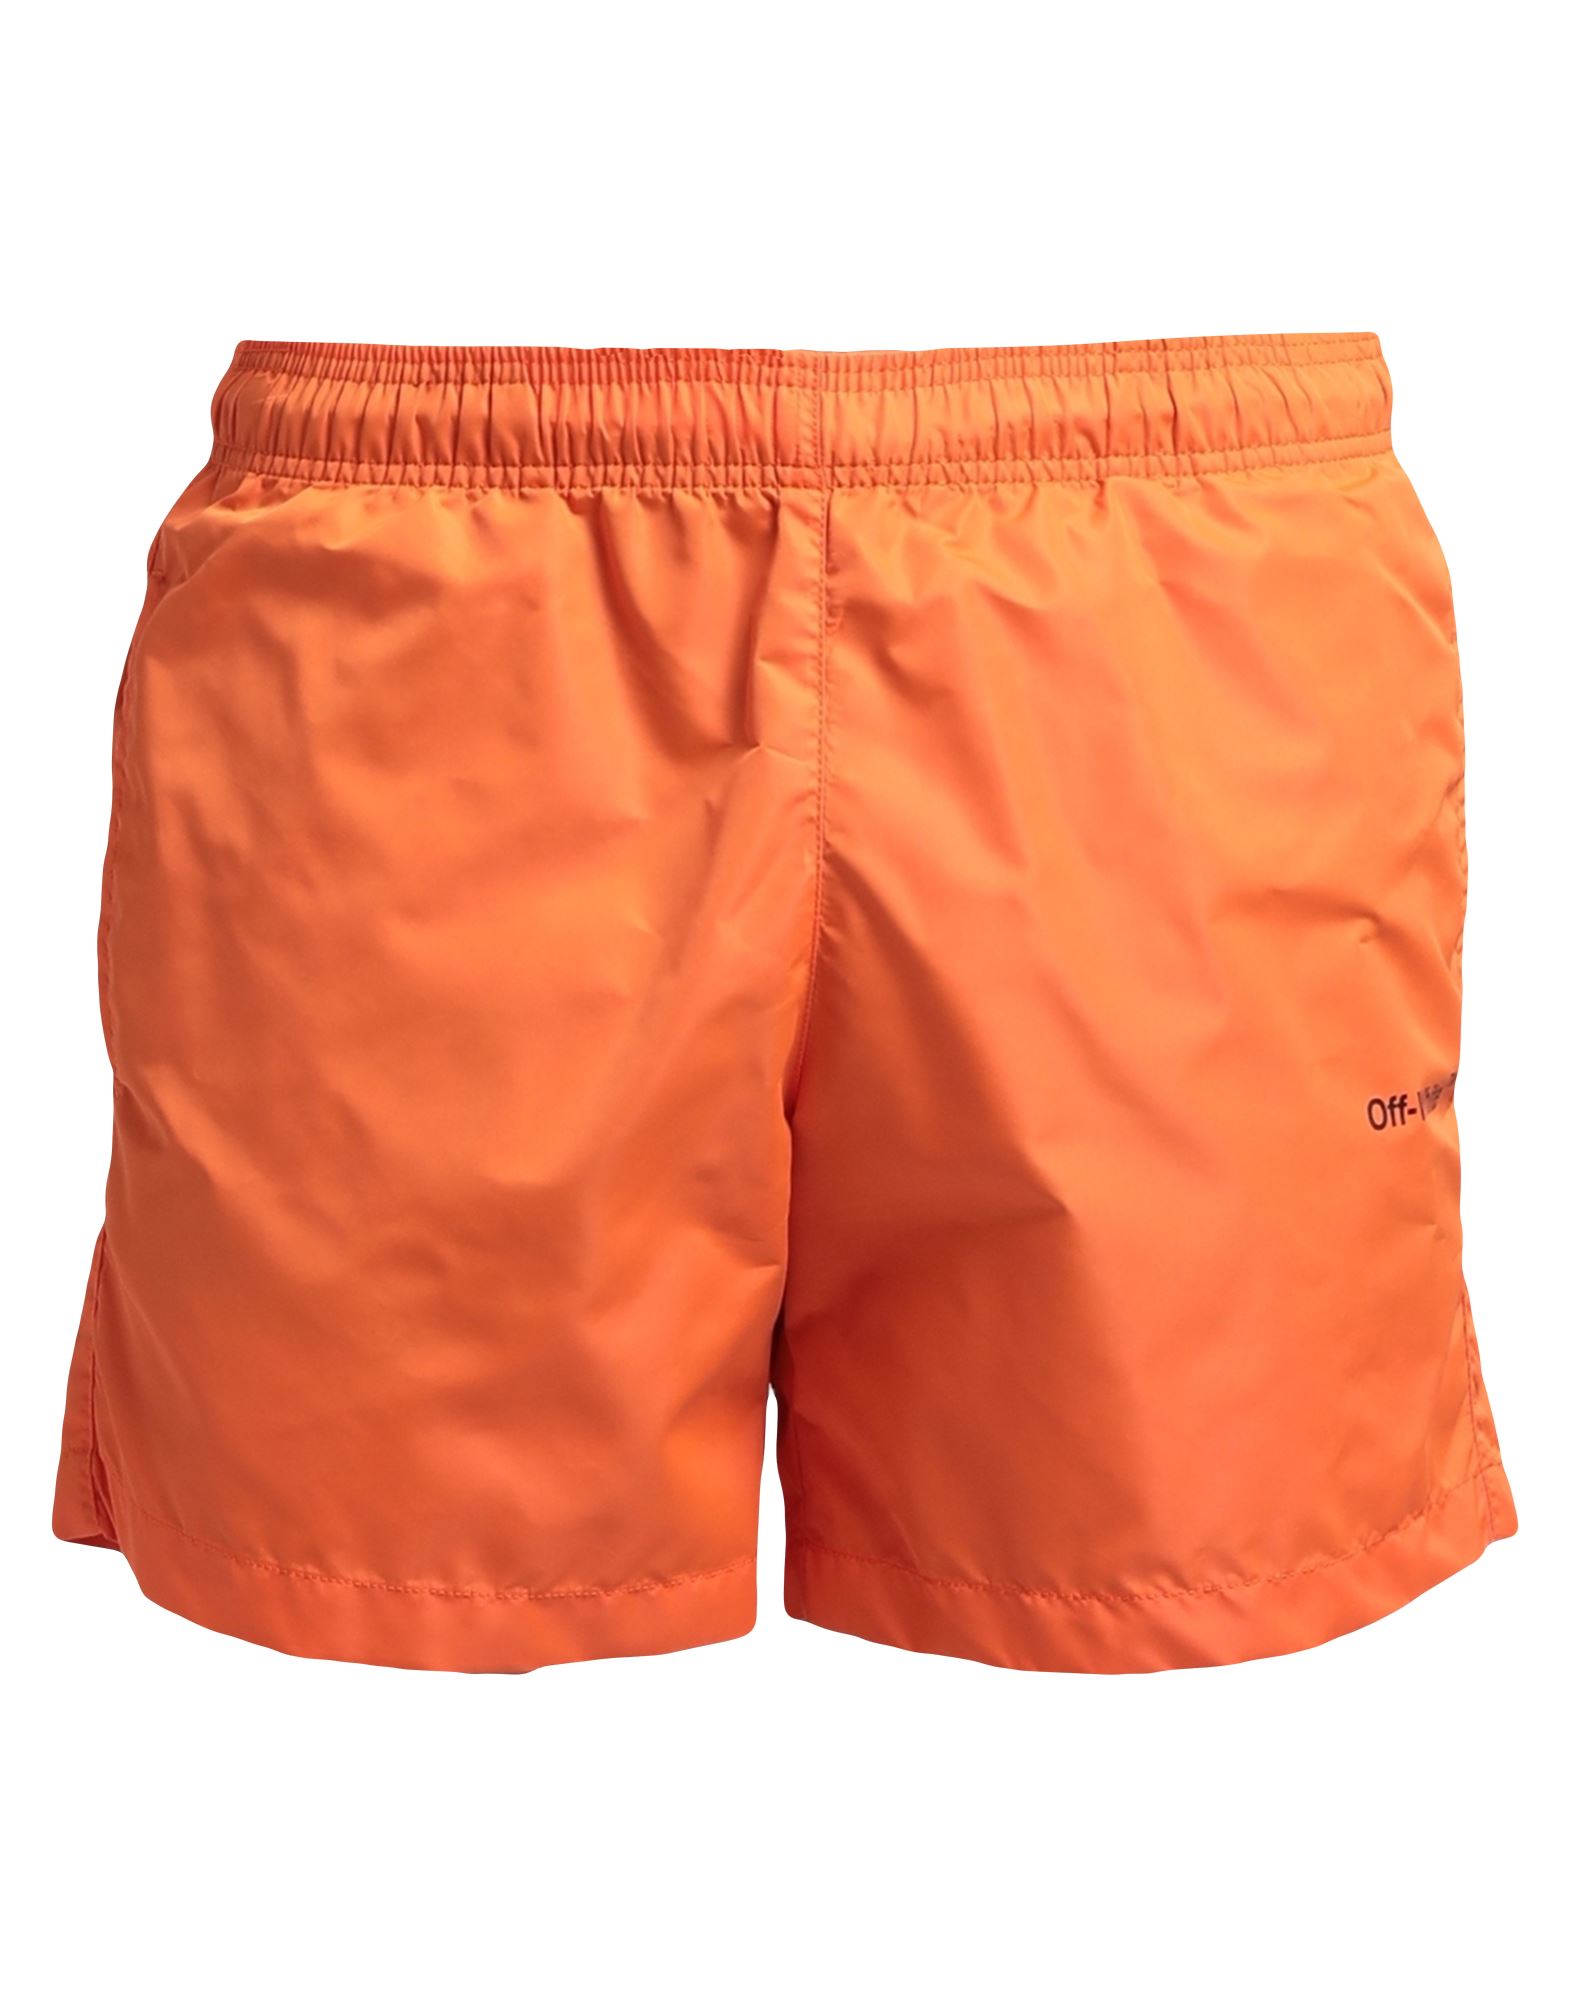 Off-white Man Swim Trunks Orange Size Xxs Polyester